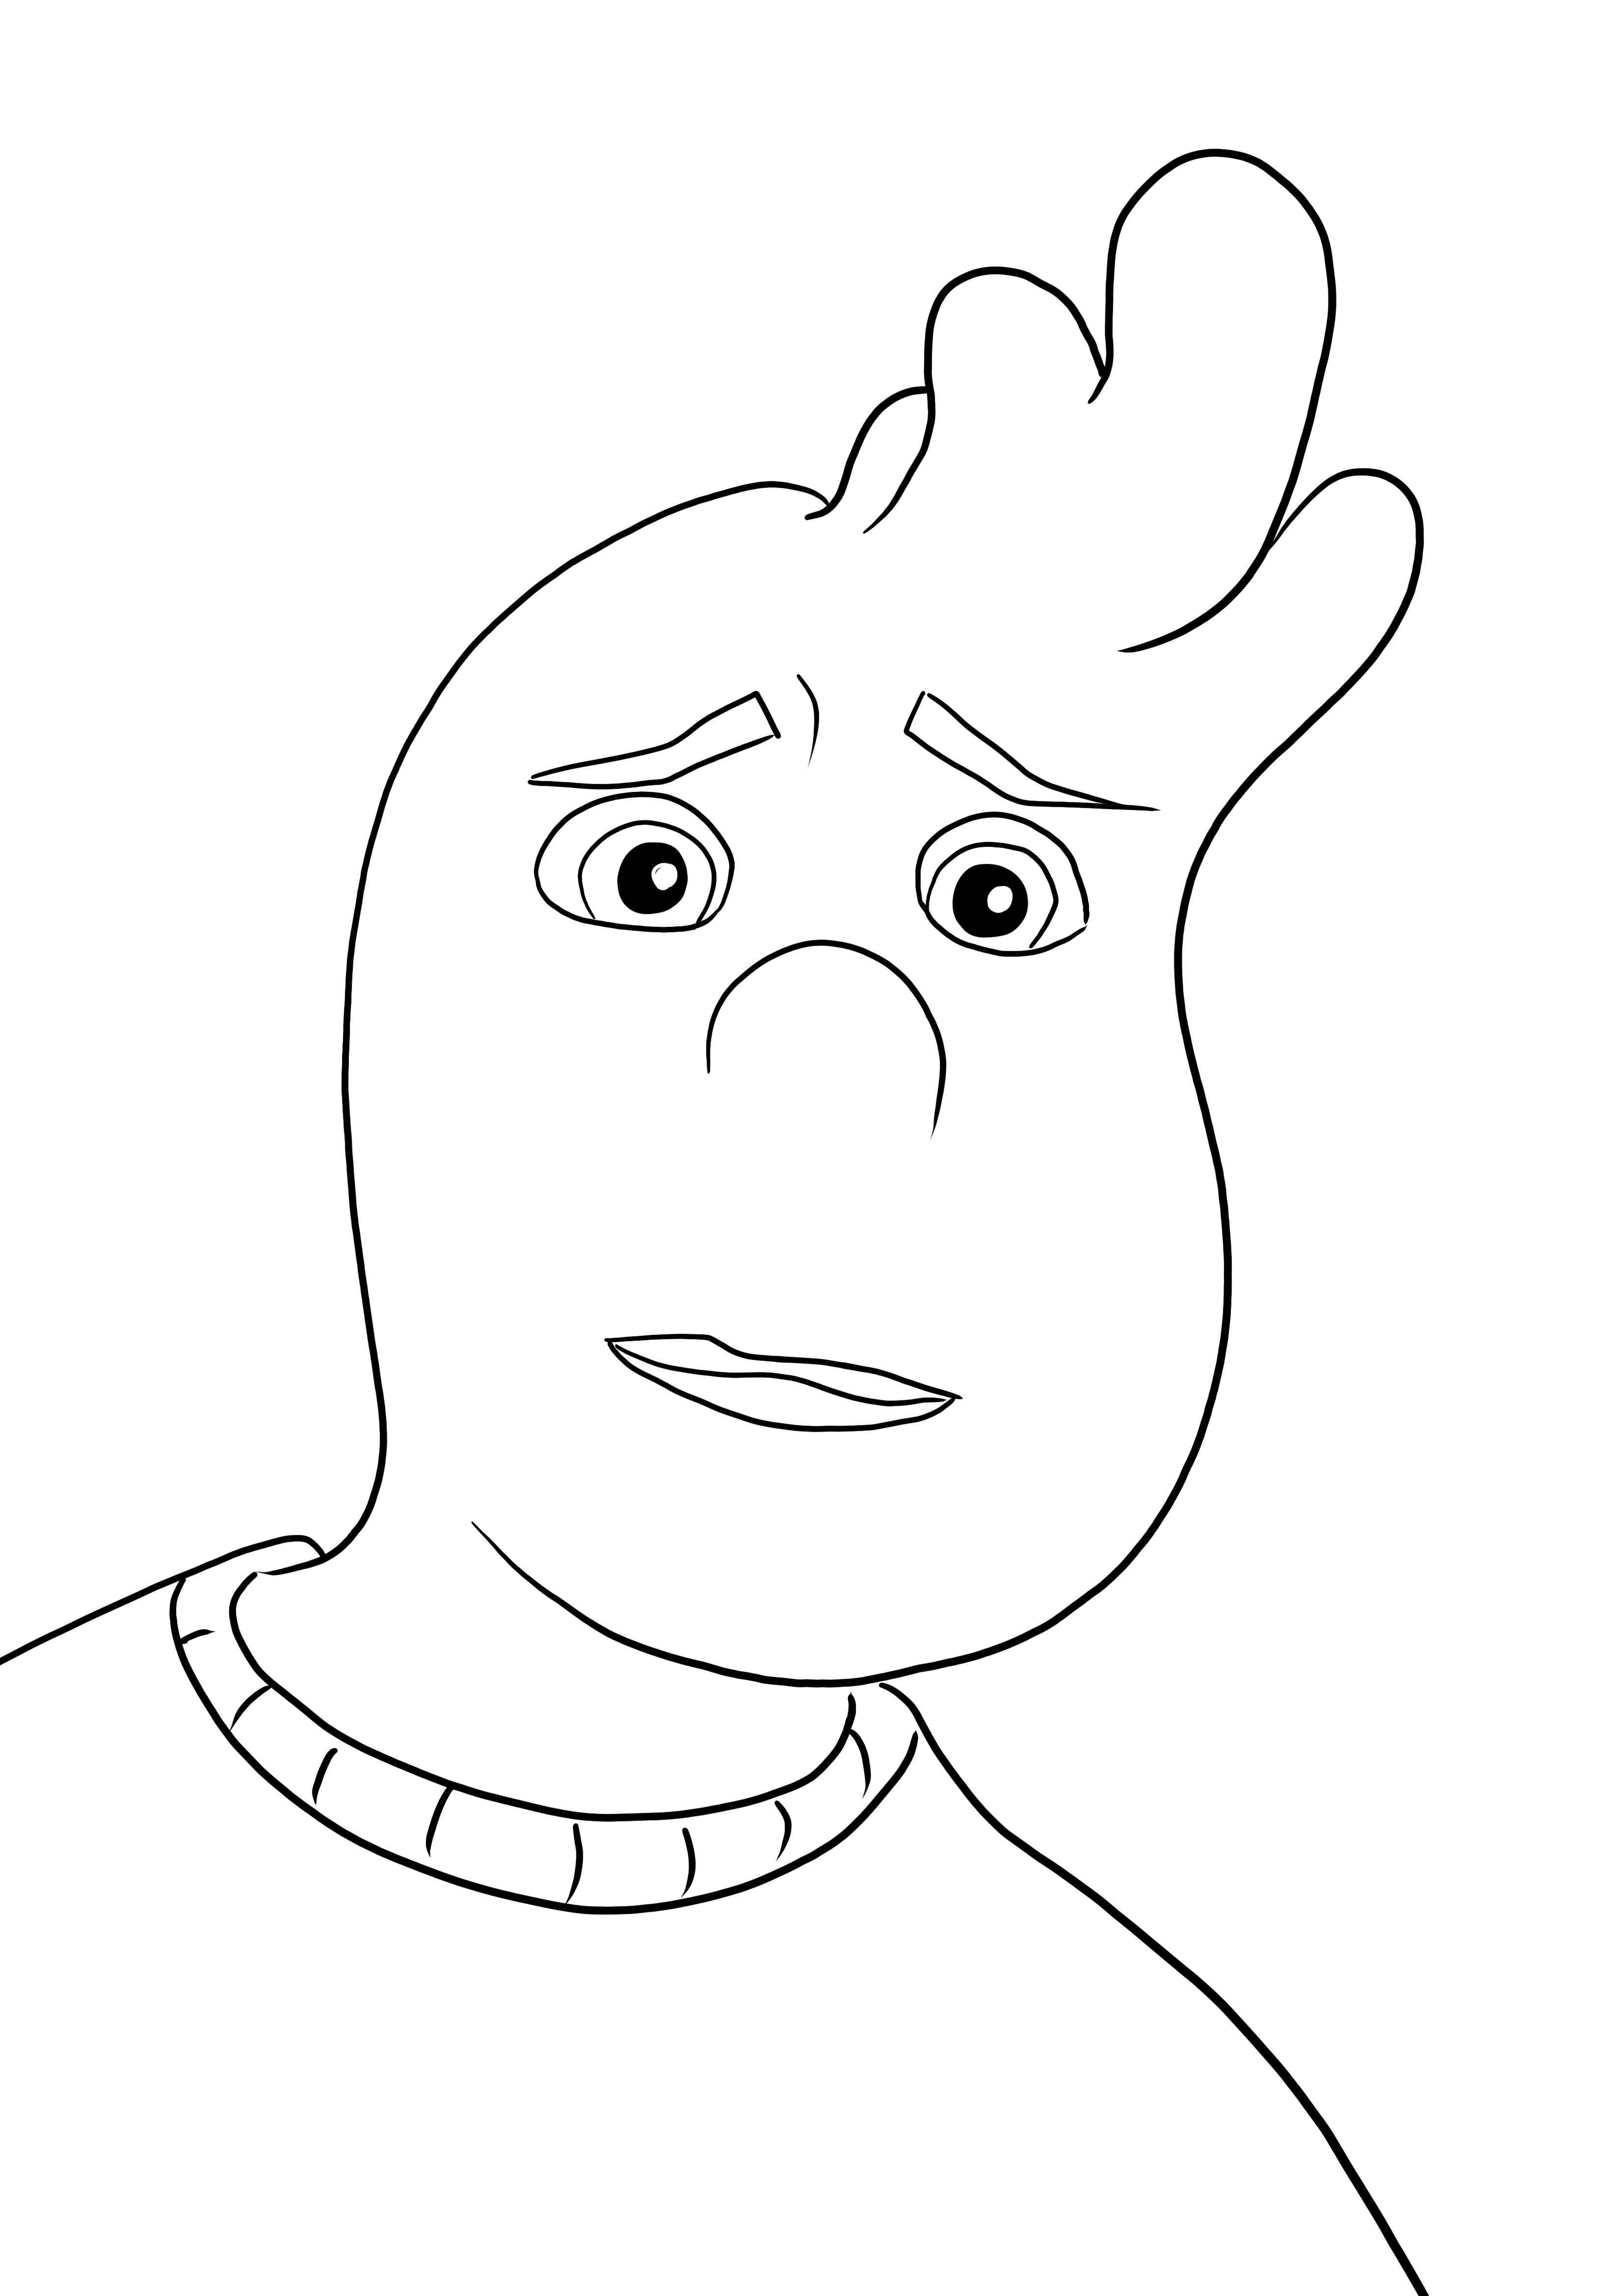 Una imagen fácil de colorear de Wade de la caricatura Elemental gratis para imprimir o descargar